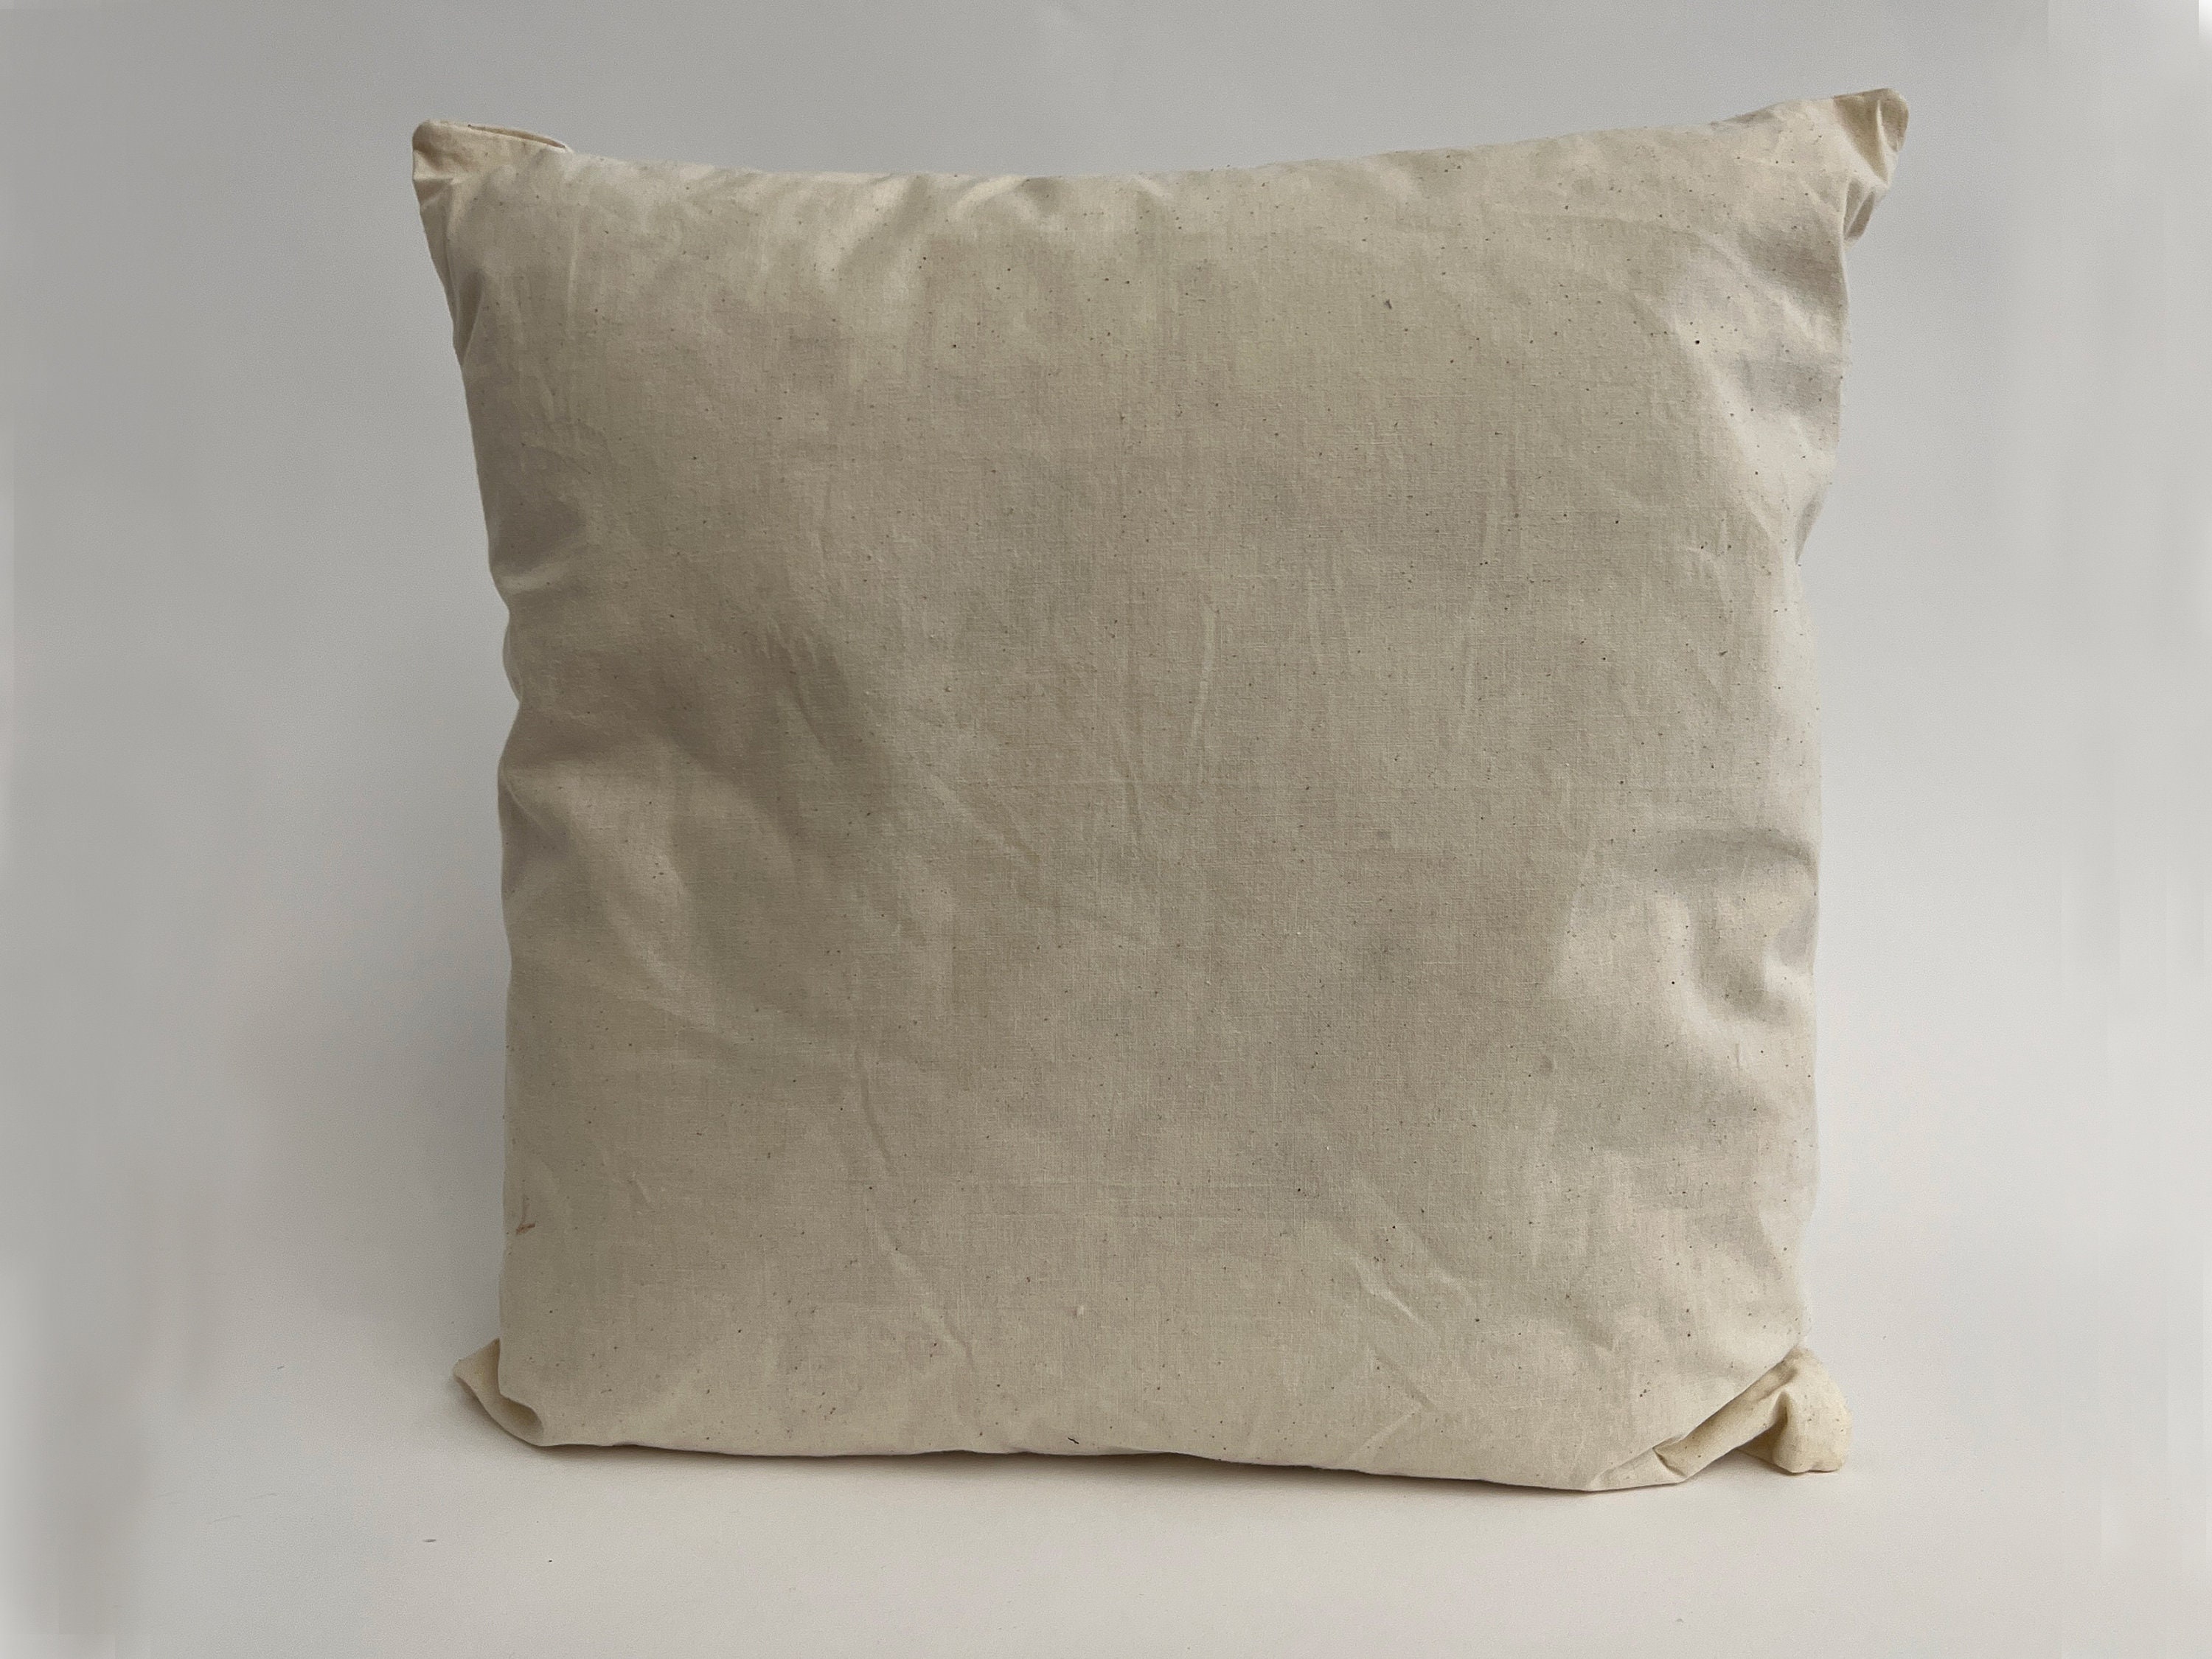 Throw Pillow Insert Organic Cotton and Kapok - Euro Sizes - Premium Pl –  Bean Products